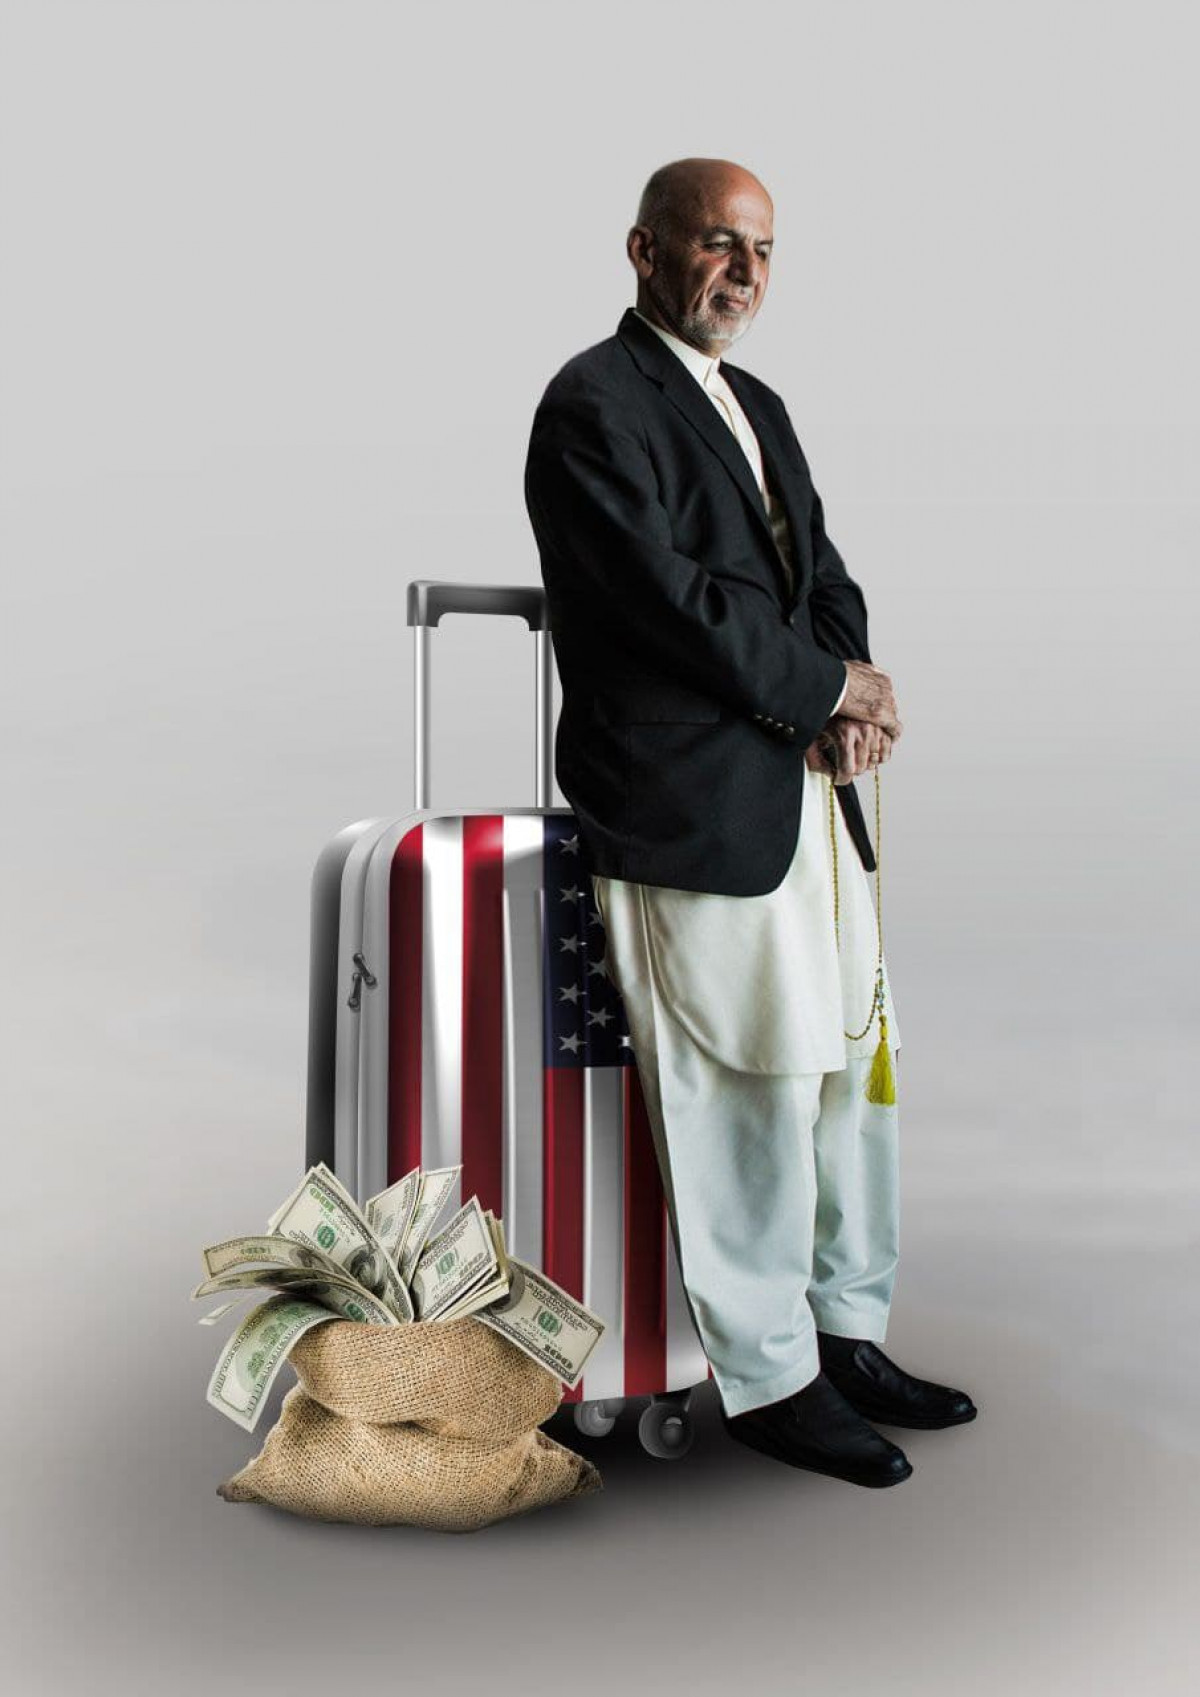 أشرف غني: الرئيس الفار الذي تحول إلى رمز لانهيار الدولة في أفغانستان